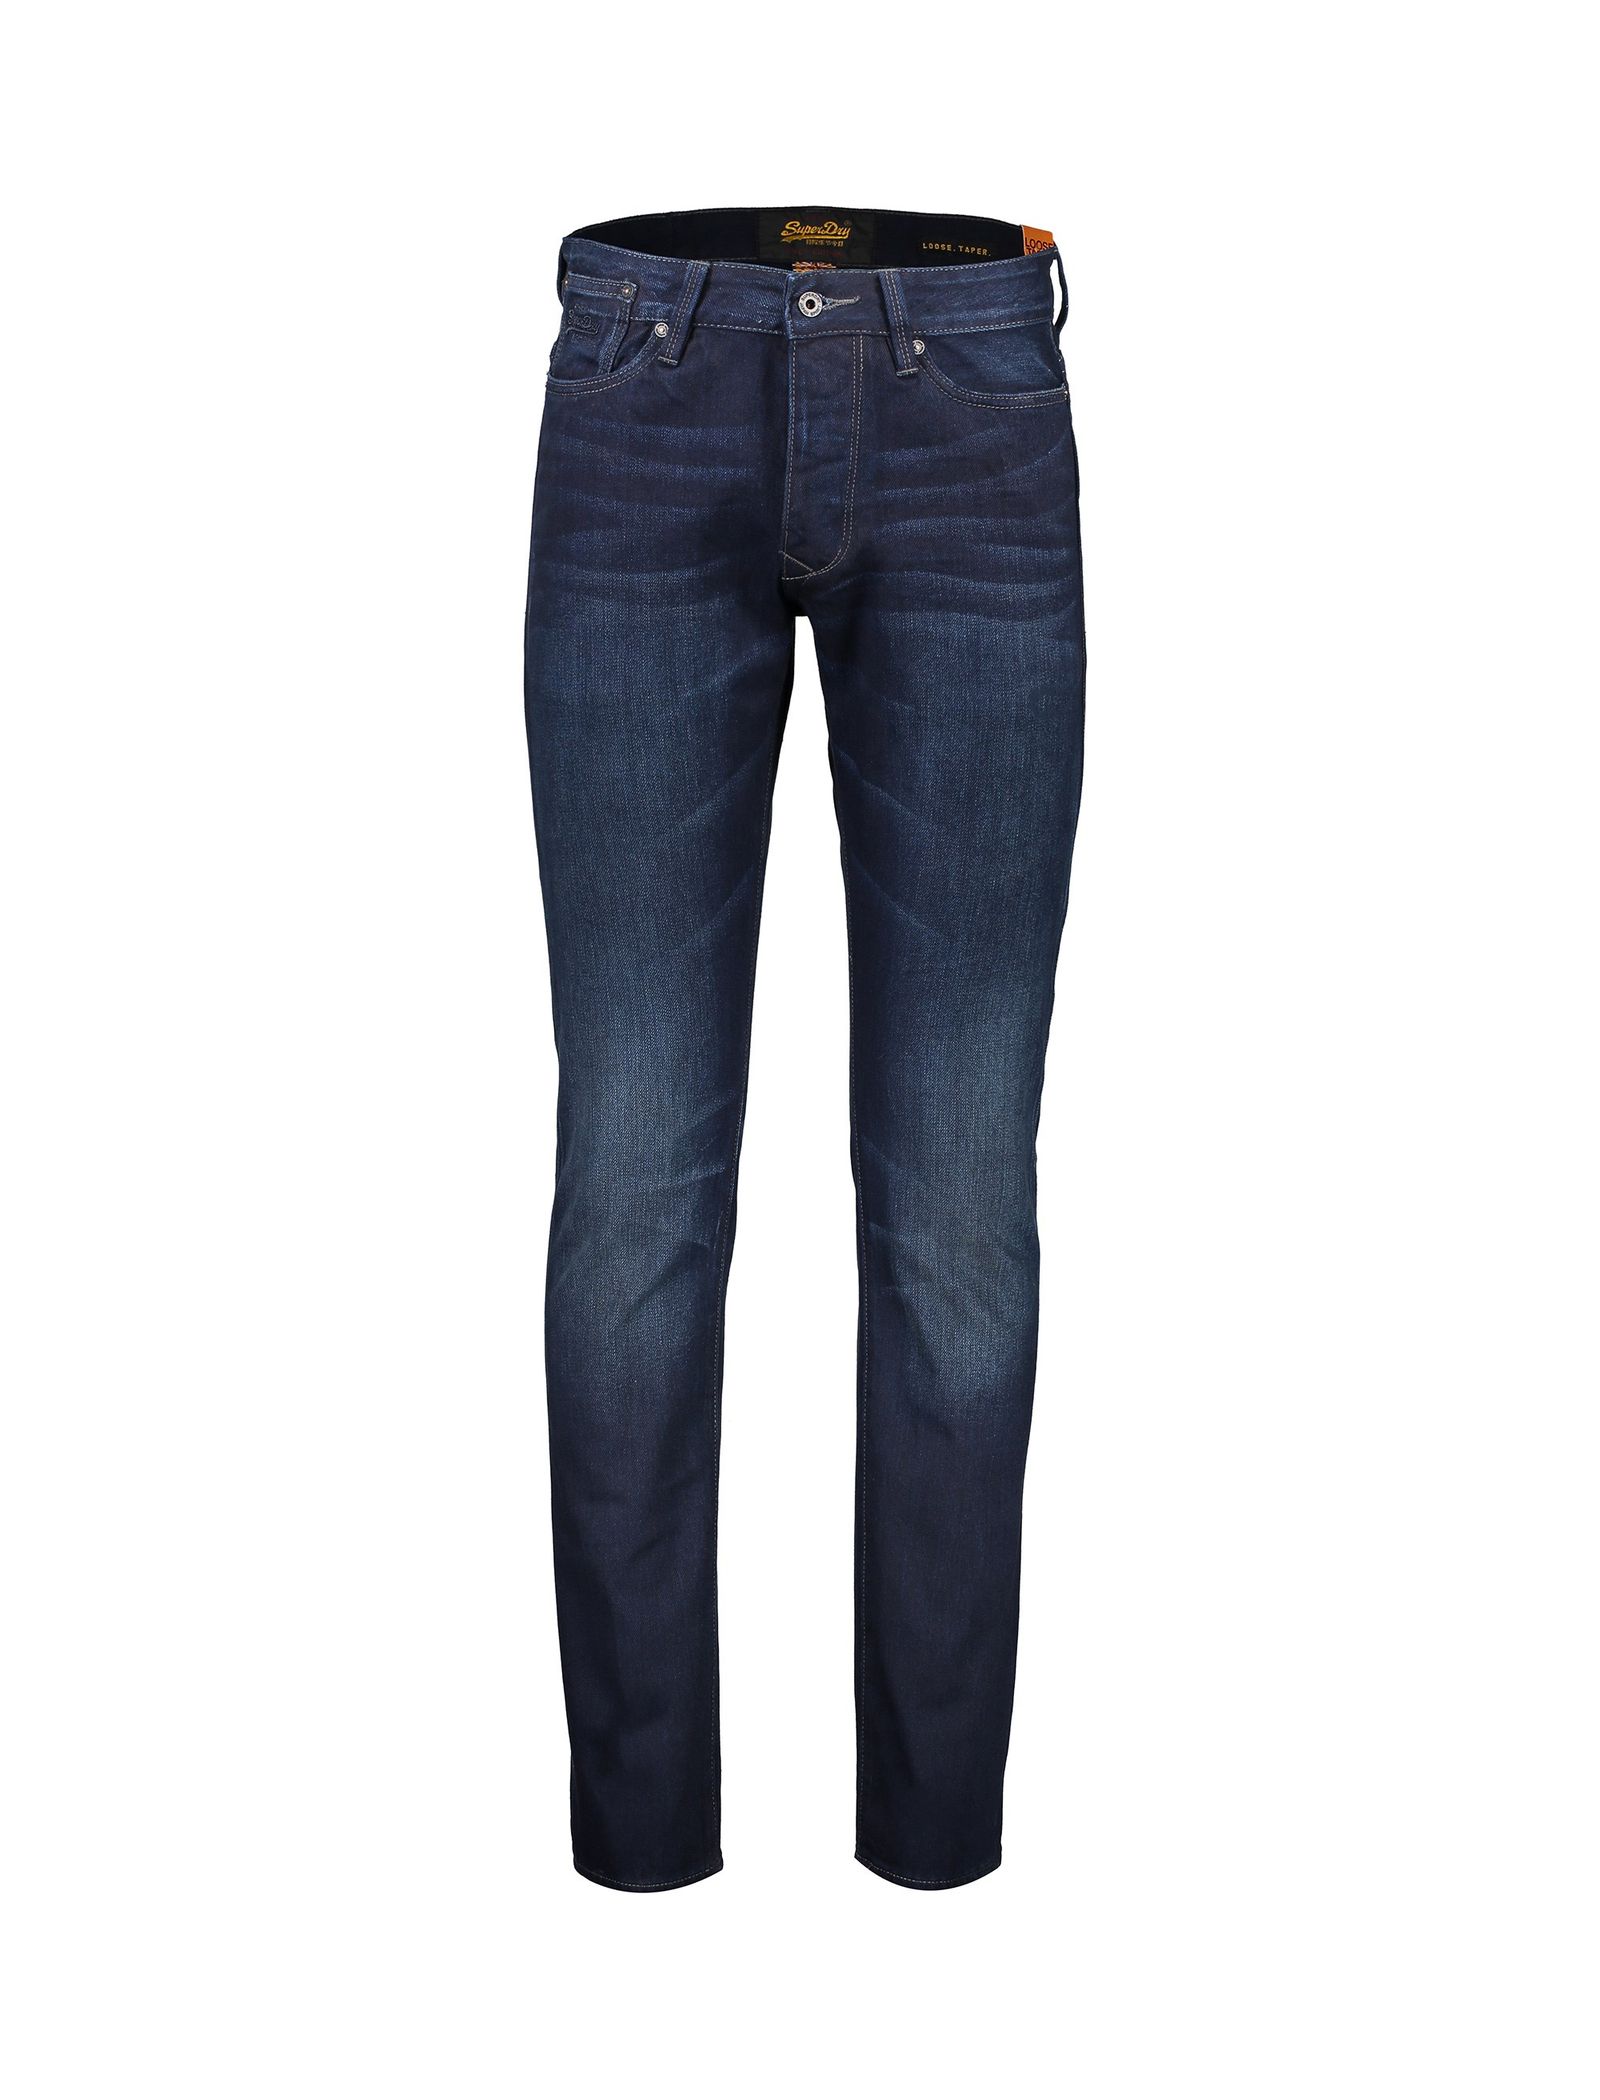 شلوار جین خمره ای مردانه Biker Tapered Jeans - سوپردرای - سرمه اي - 2